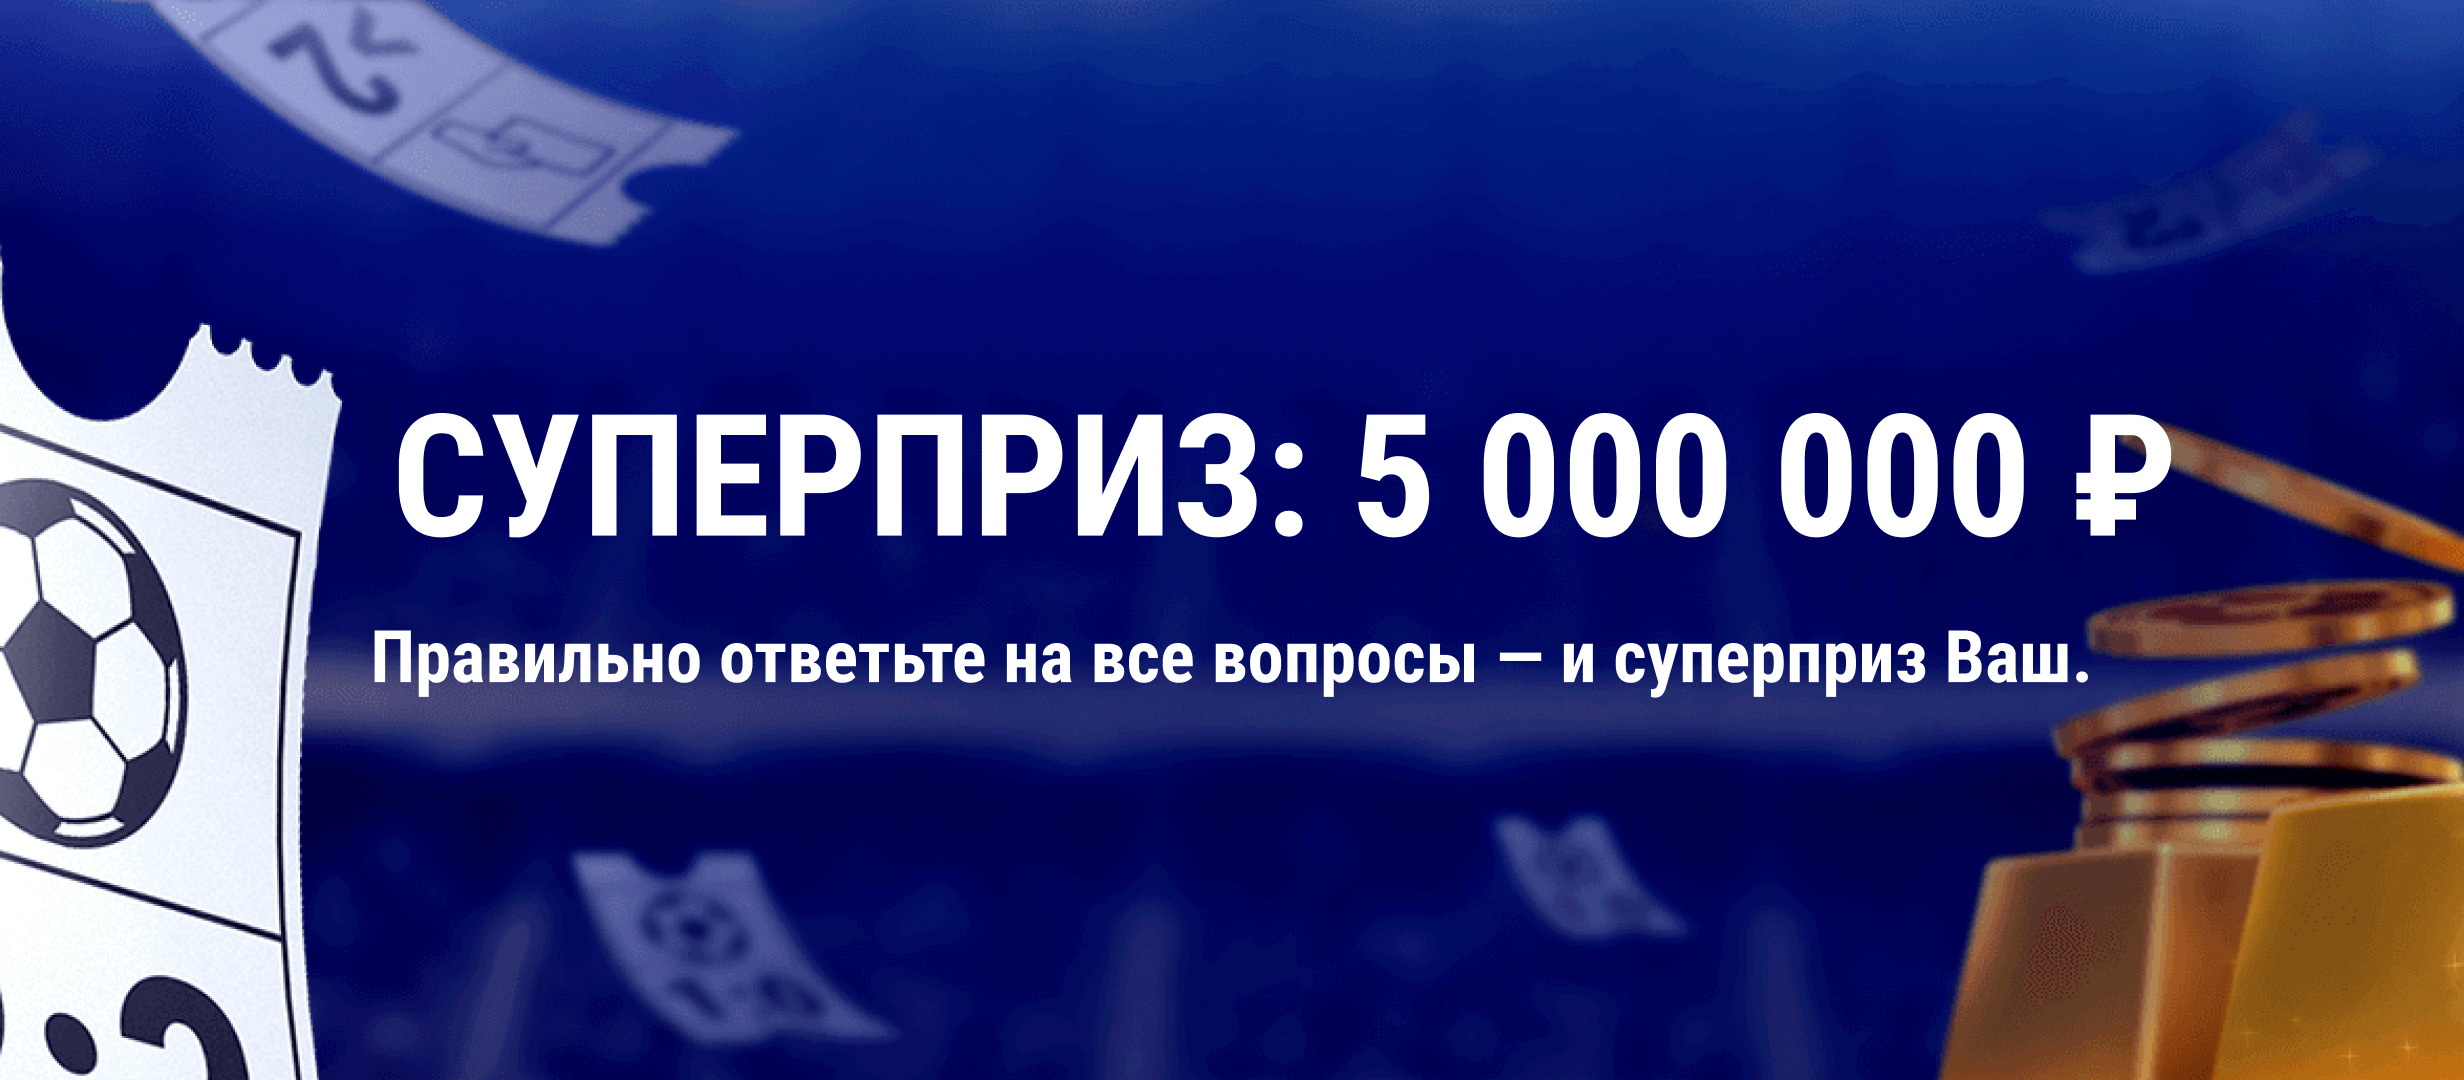 Выиграй Супер приз в 5 000 000 рублей от БК «МарафонБет»